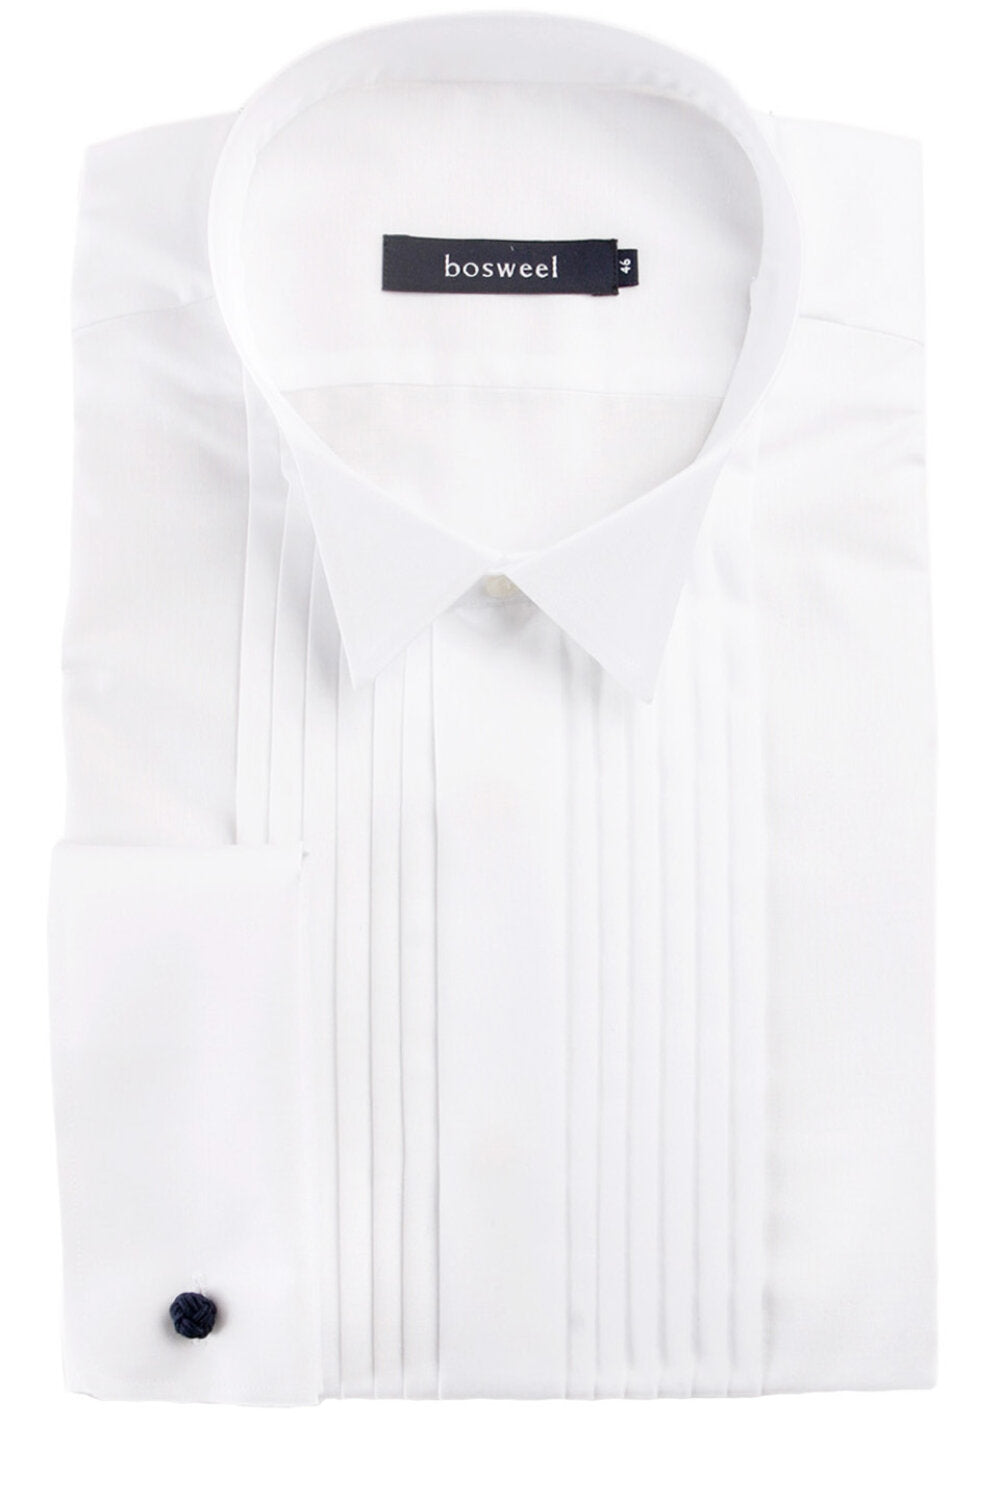 Bosweel smokingskjorta - White